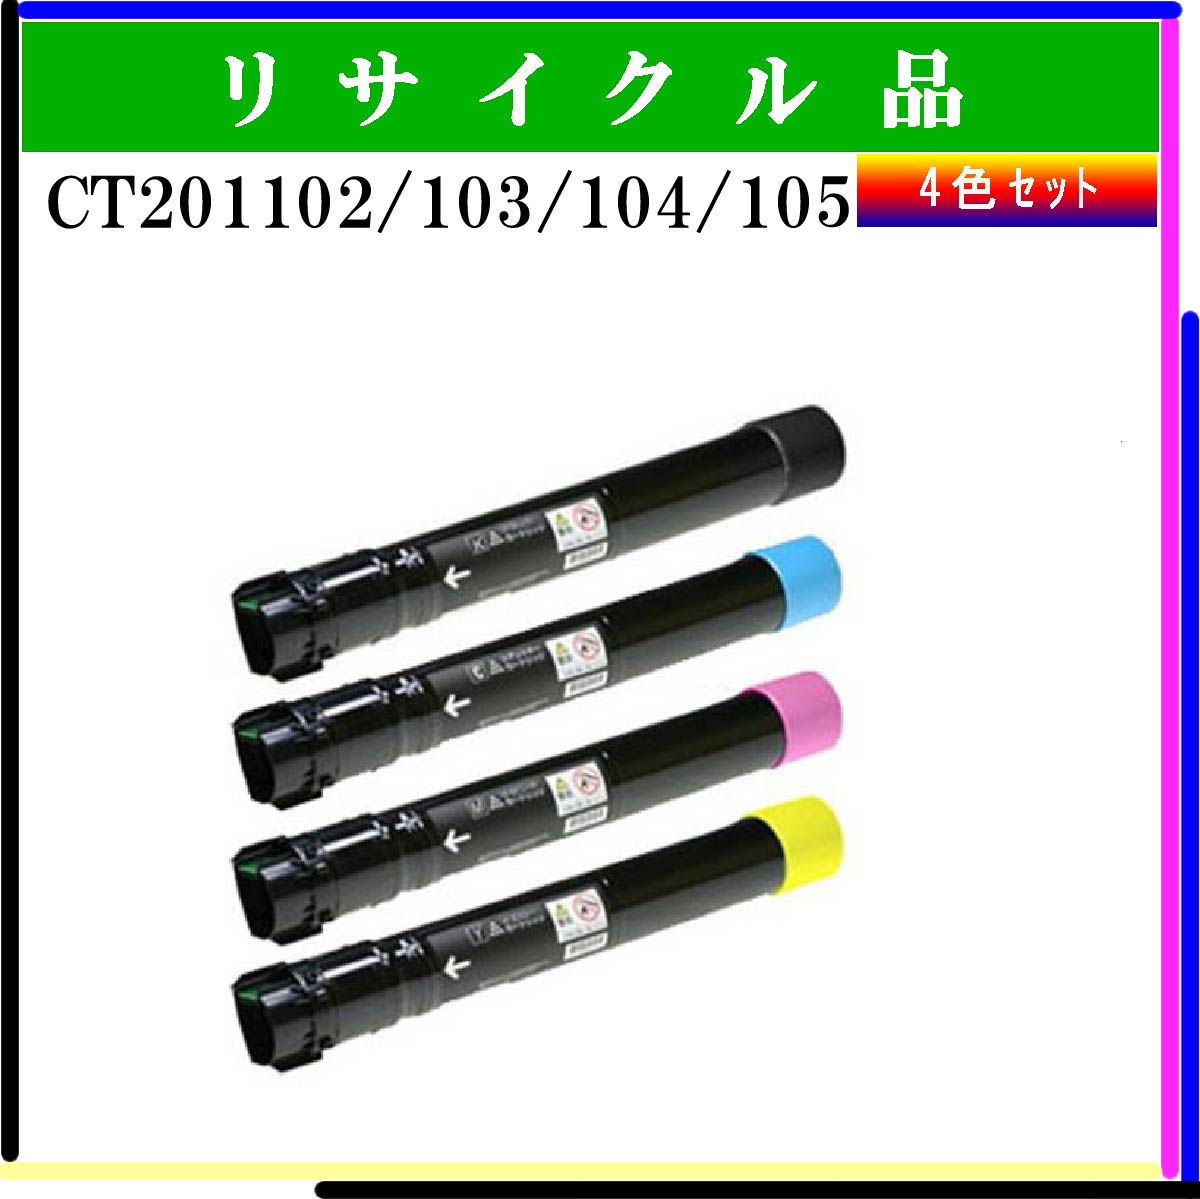 CT201102/103/104/105 (4色ｾｯﾄ)